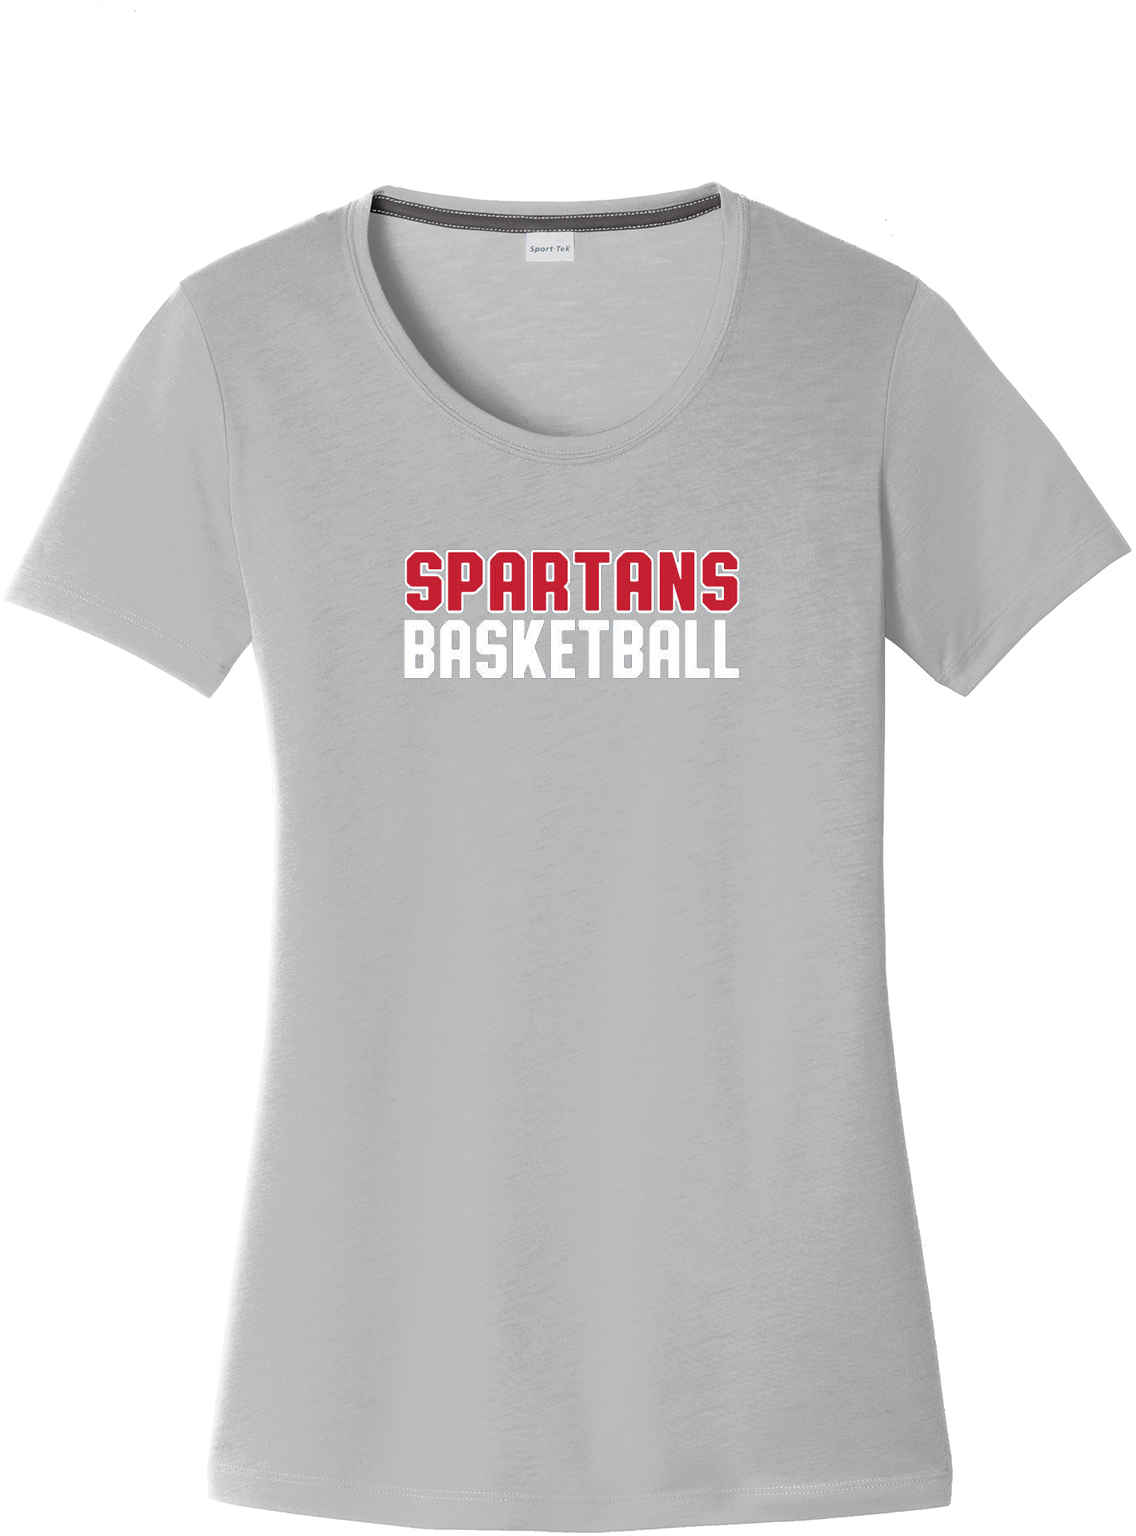 Holy Spirit Basketball Women's CottonTouch Performance T-Shirt